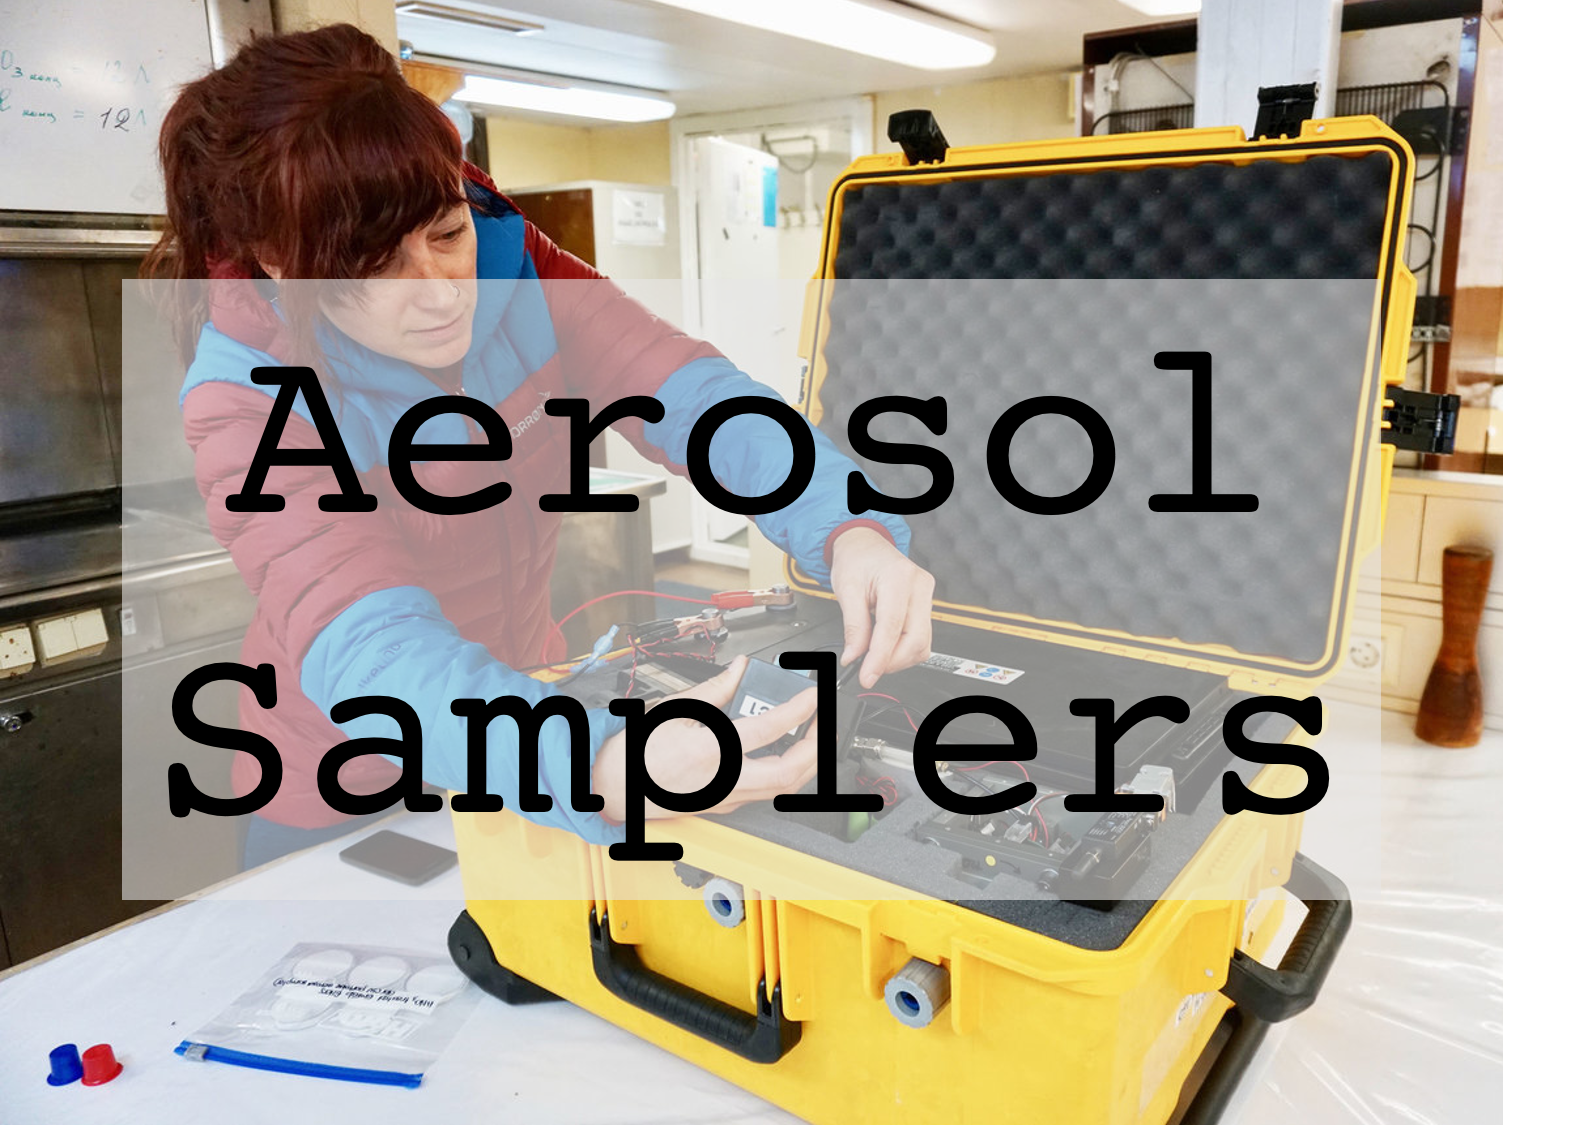 Aerosol samplers